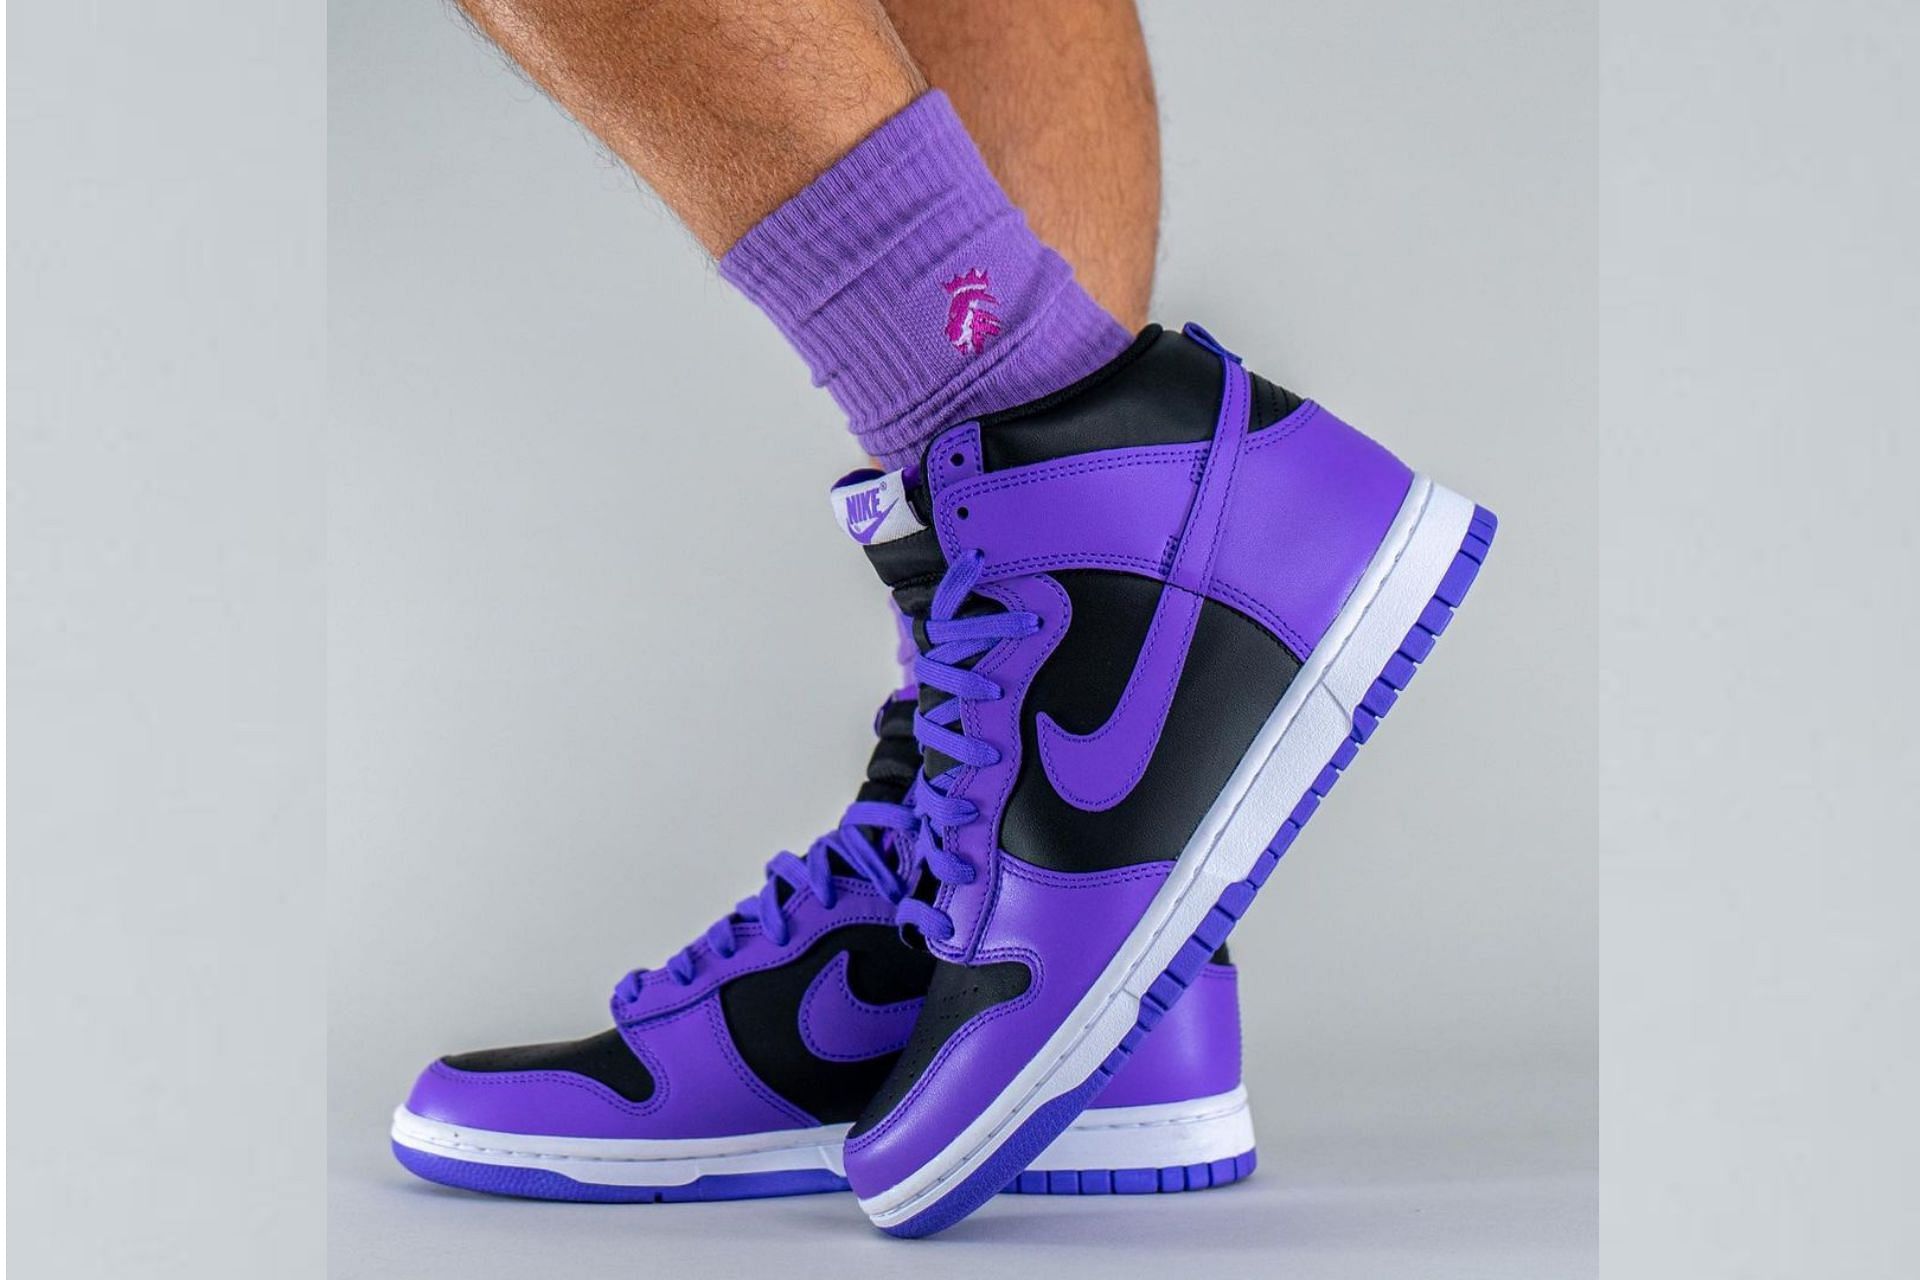 Nike Dunk High Purple/Black colorway (Image via Instagram/@yankeekicks)